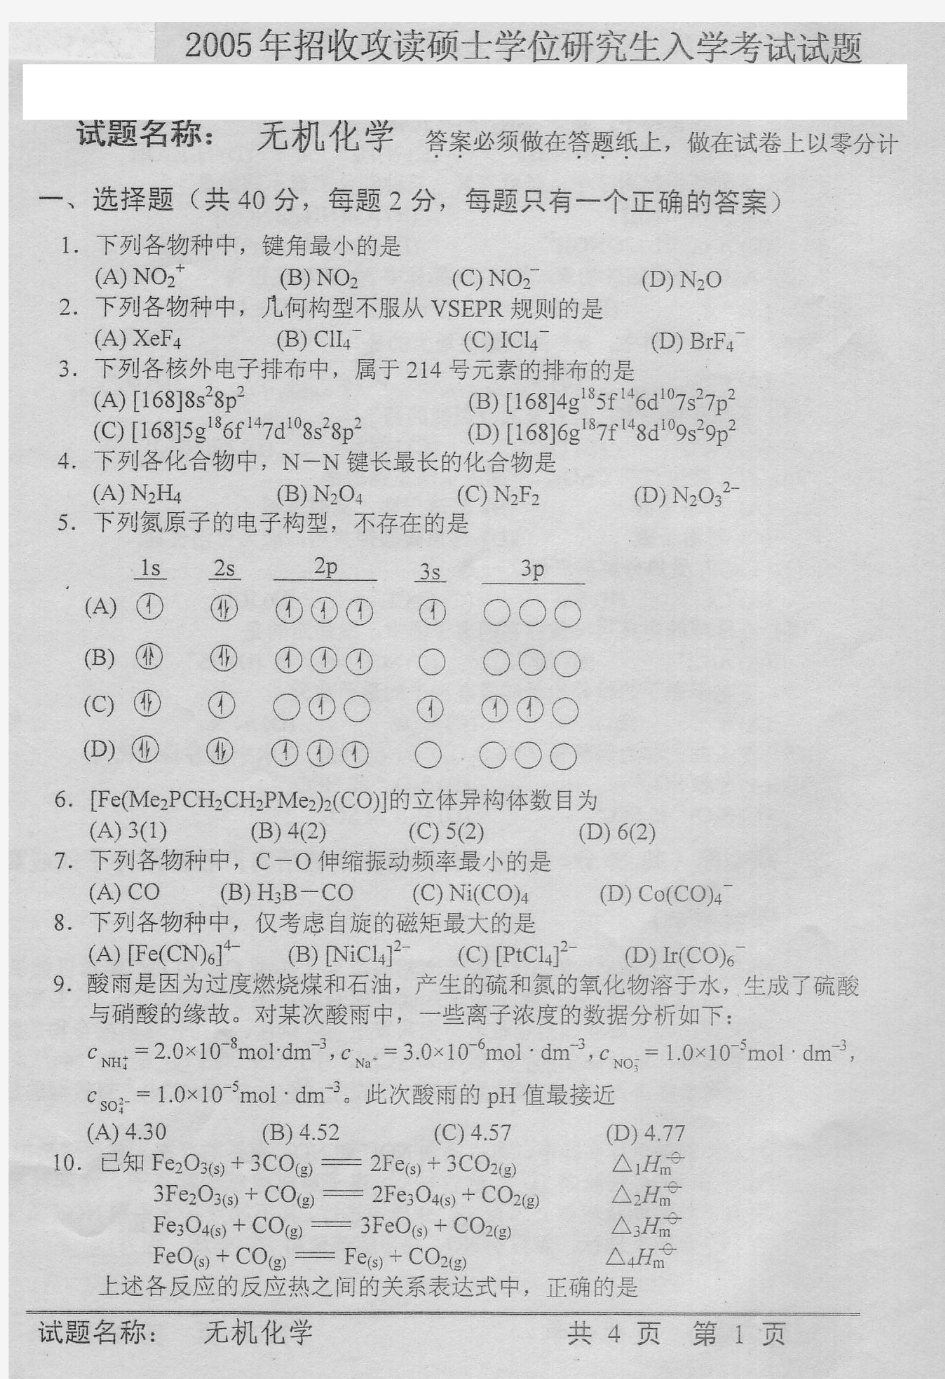 中国科学院研究生院2005年中科院《无机化学》考研试题及答案